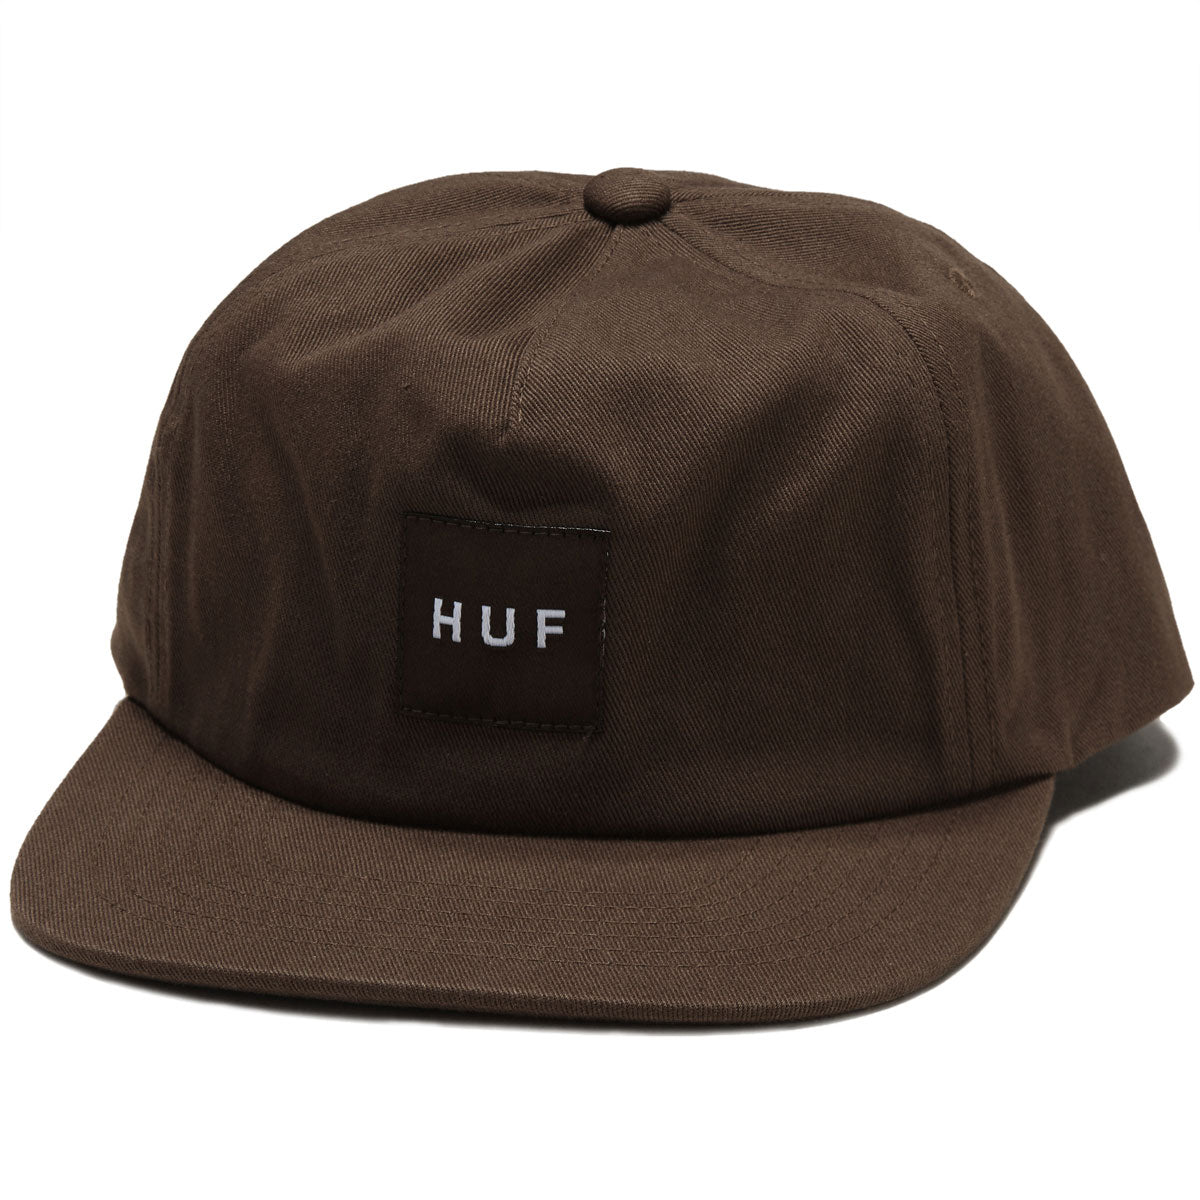 HUF Set Box Snapback Hat - Bison image 1